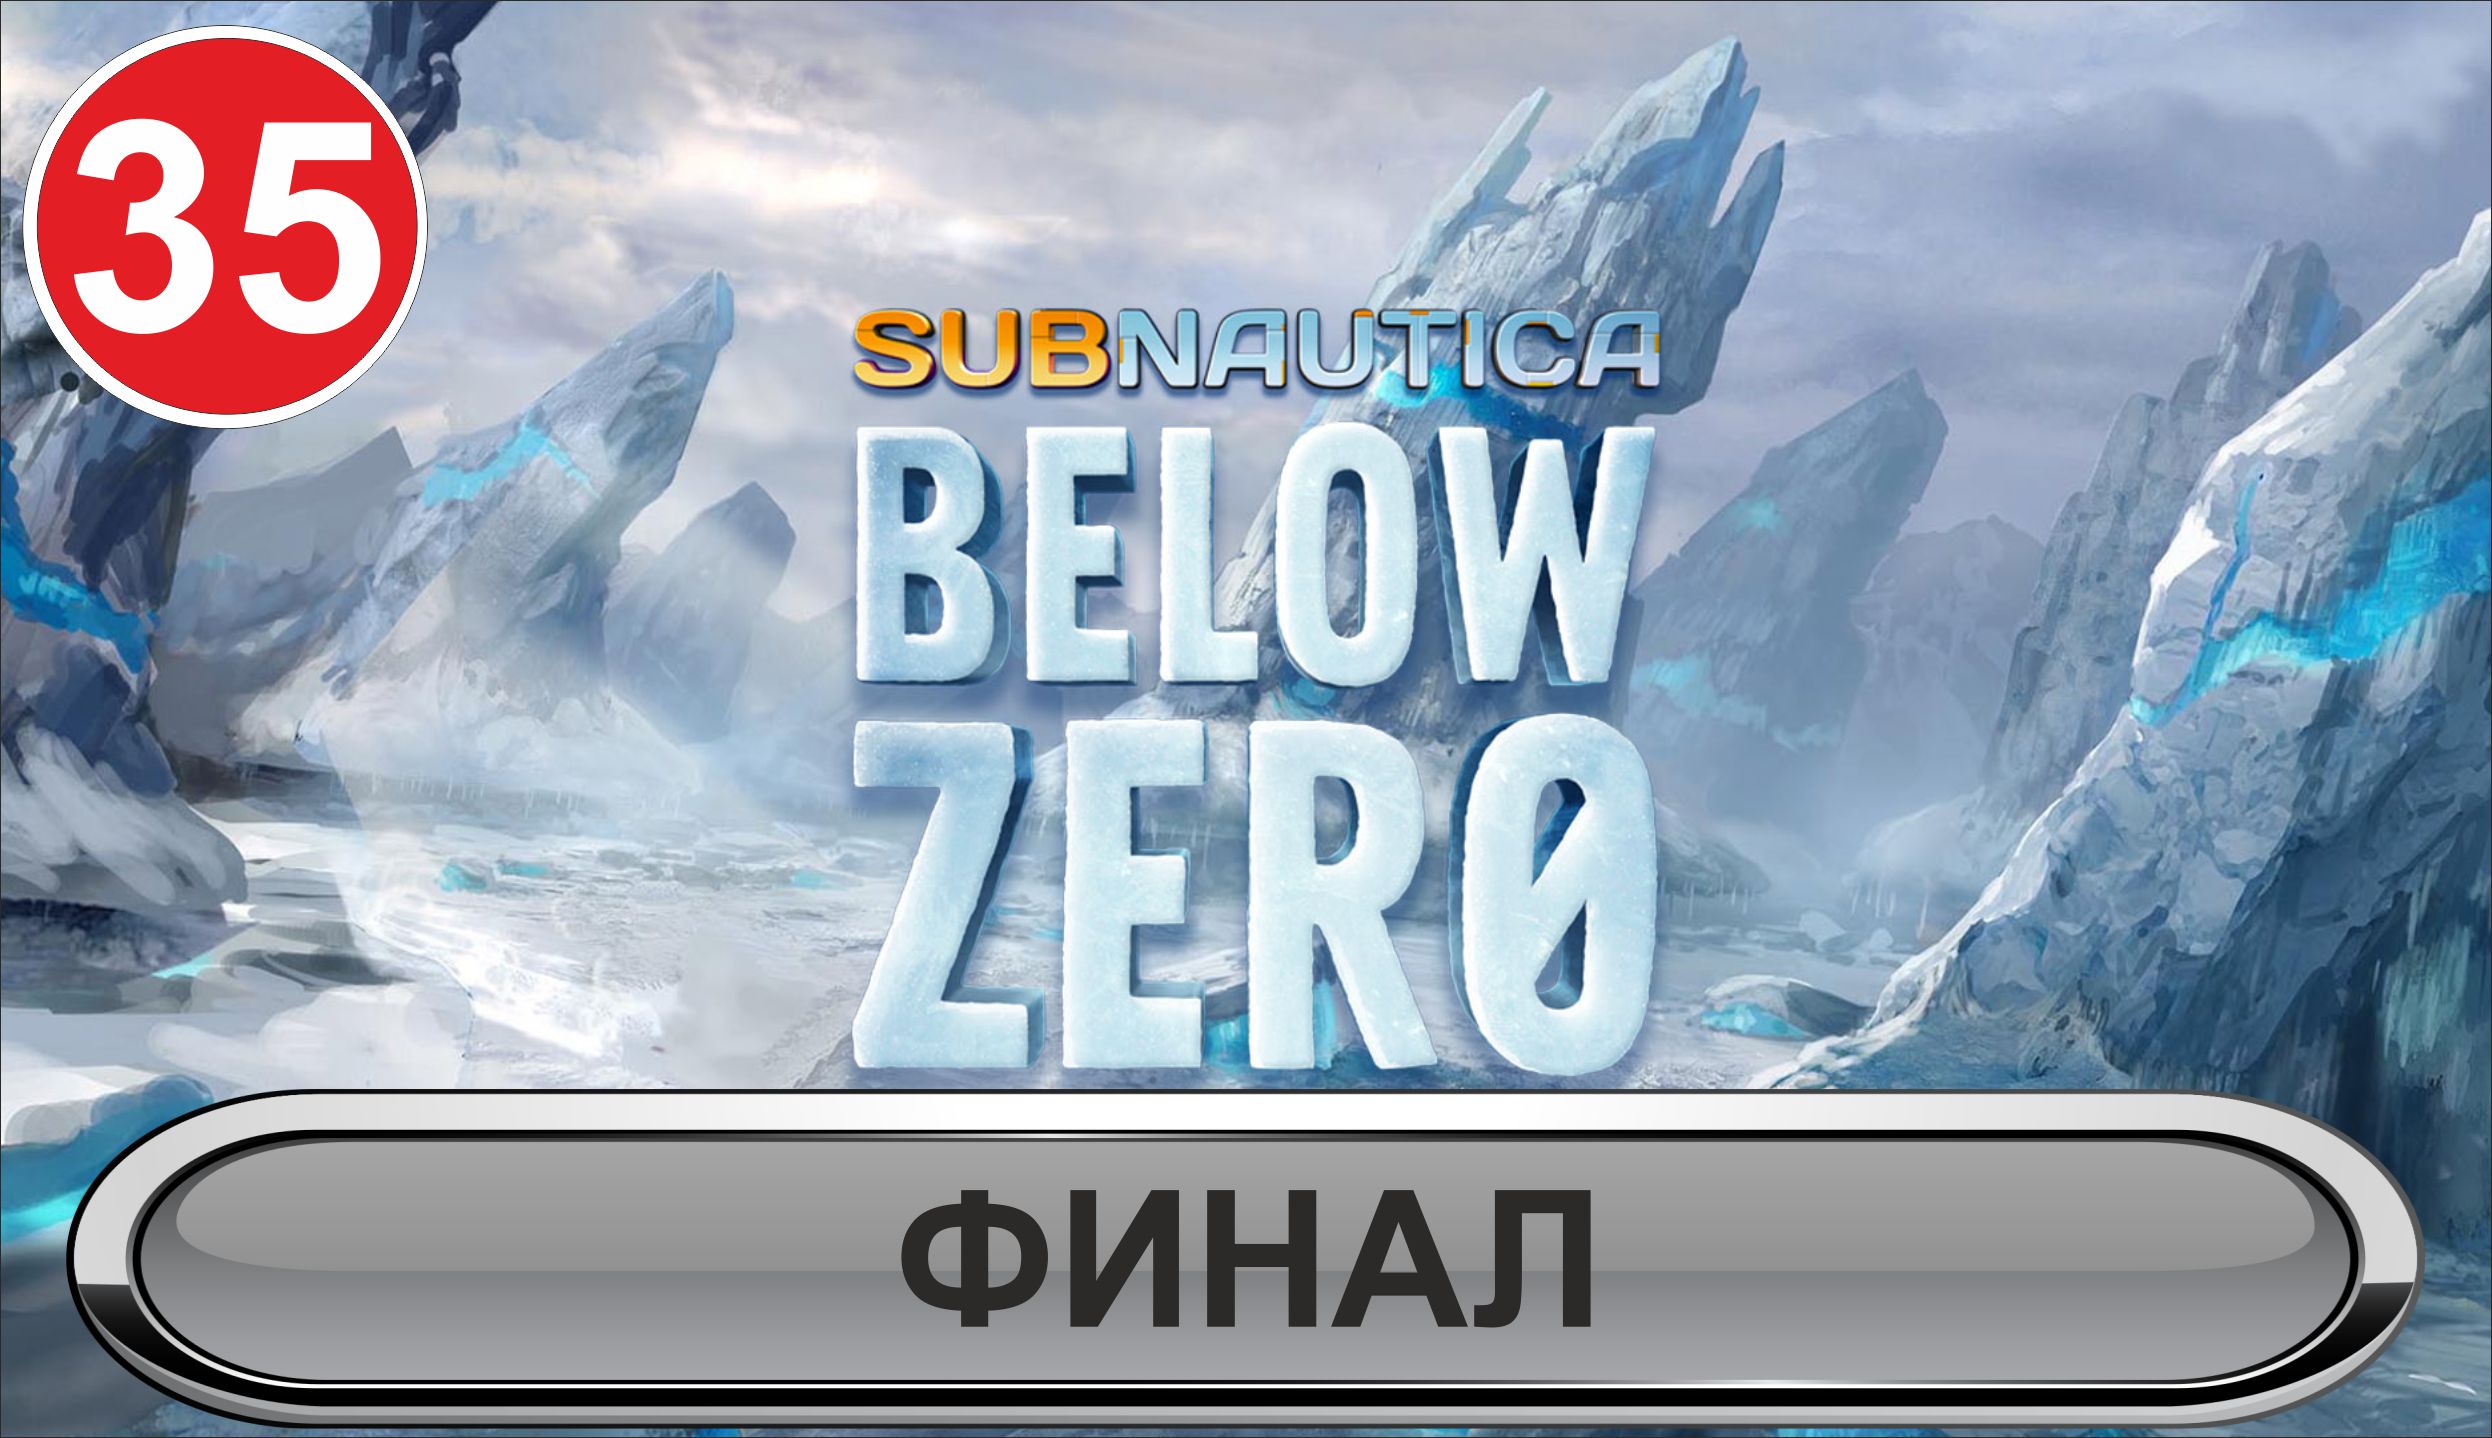 Subnautica: Below Zero - Финал